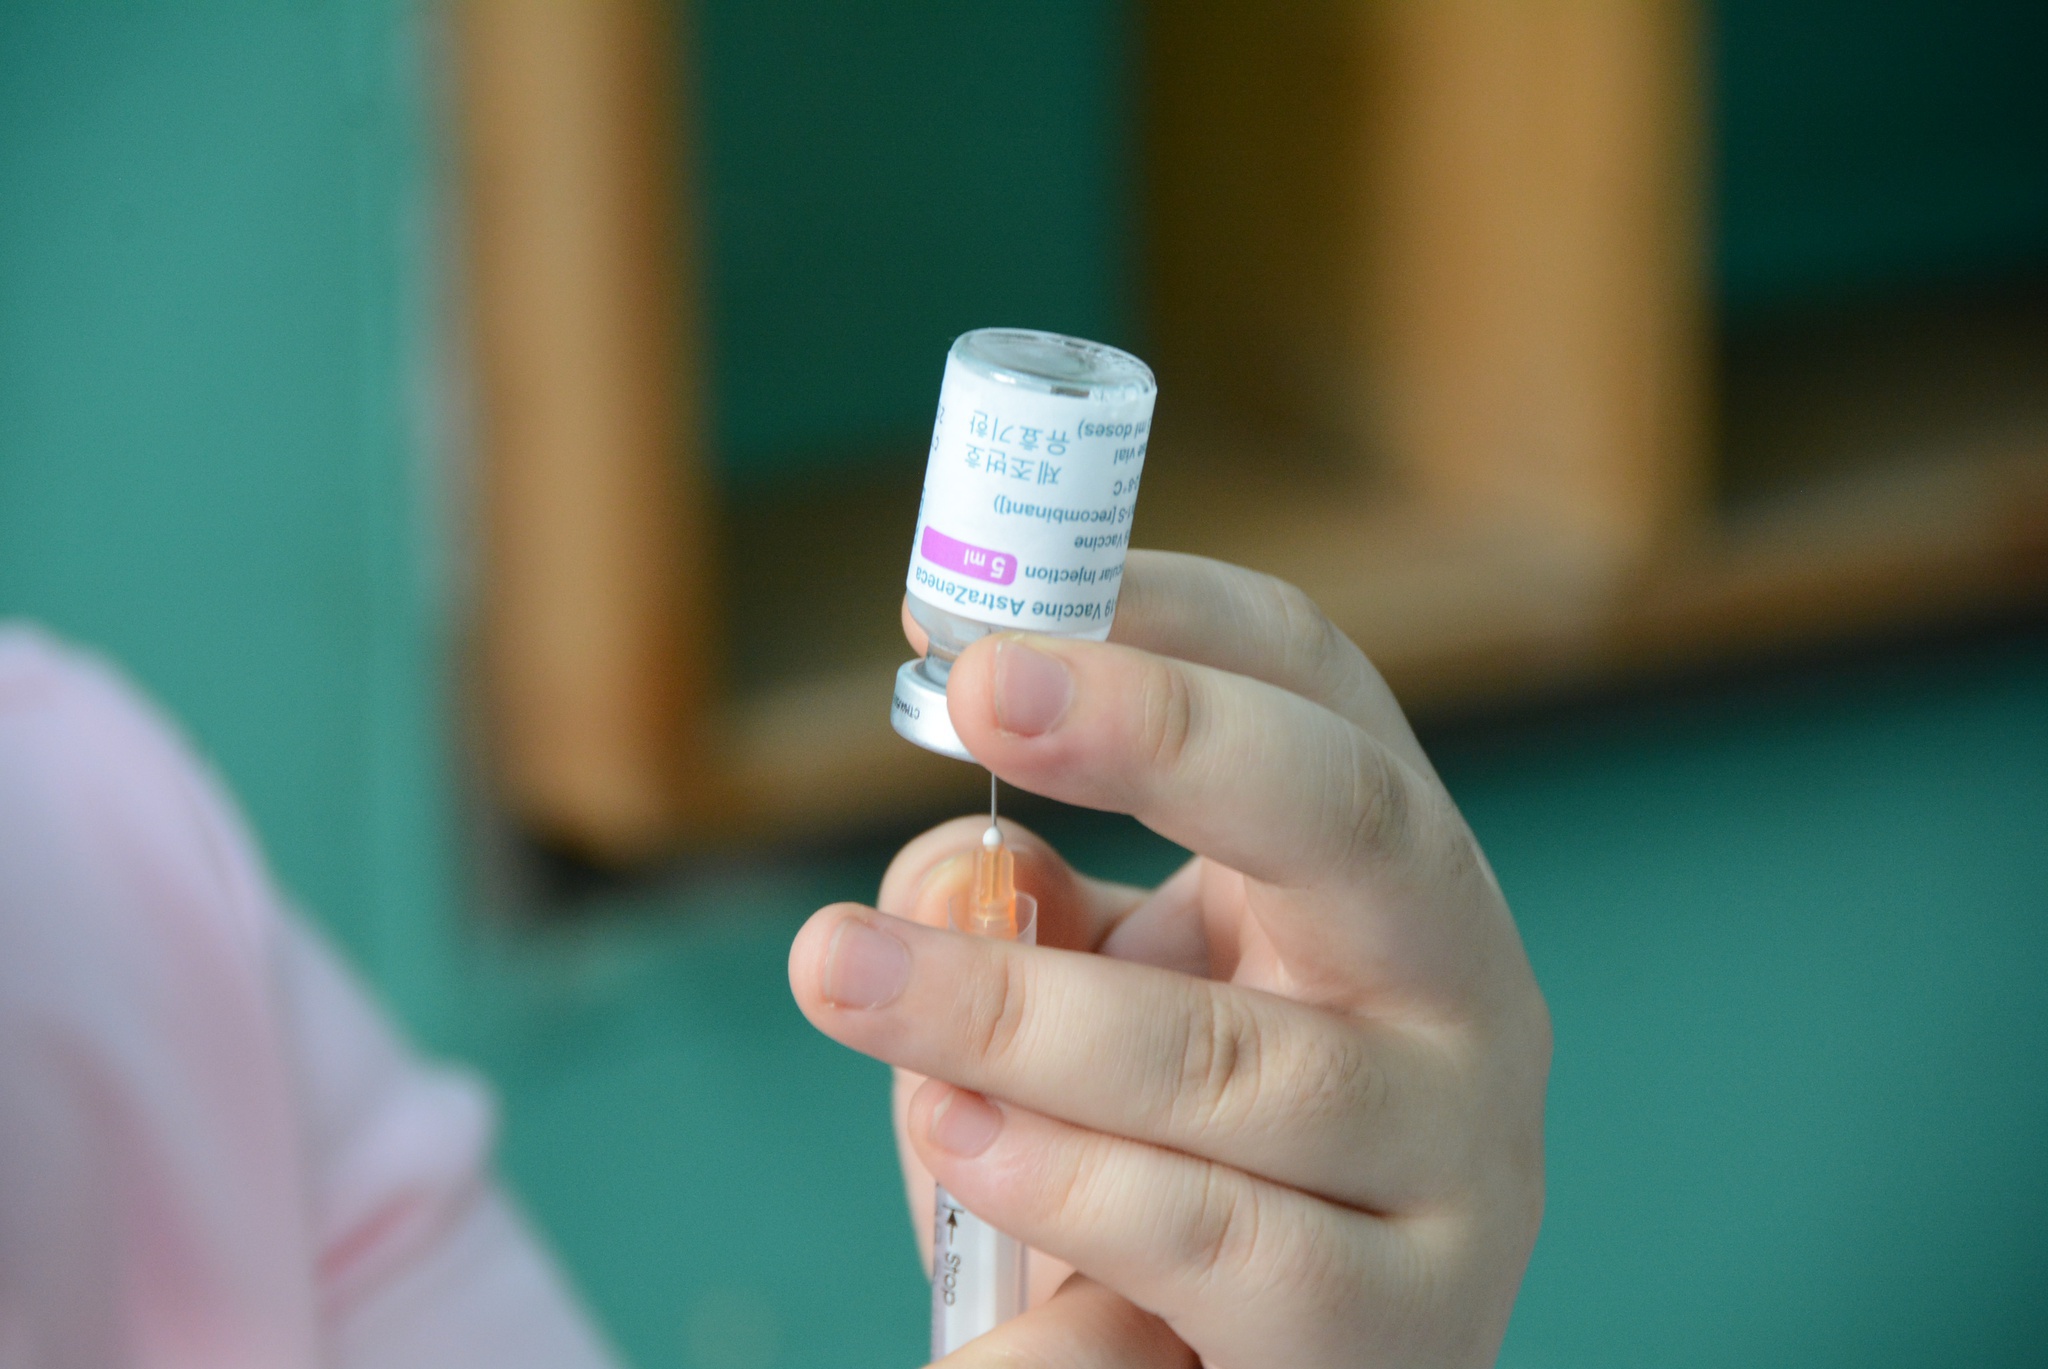 Nhiều nhà nghiên cứu khuyến nghị, mọi người cần phải tiêm vắc xin Covid-19, bởi đây mới là cách tốt nhất để bảo vệ bản thân /// Duy Tính